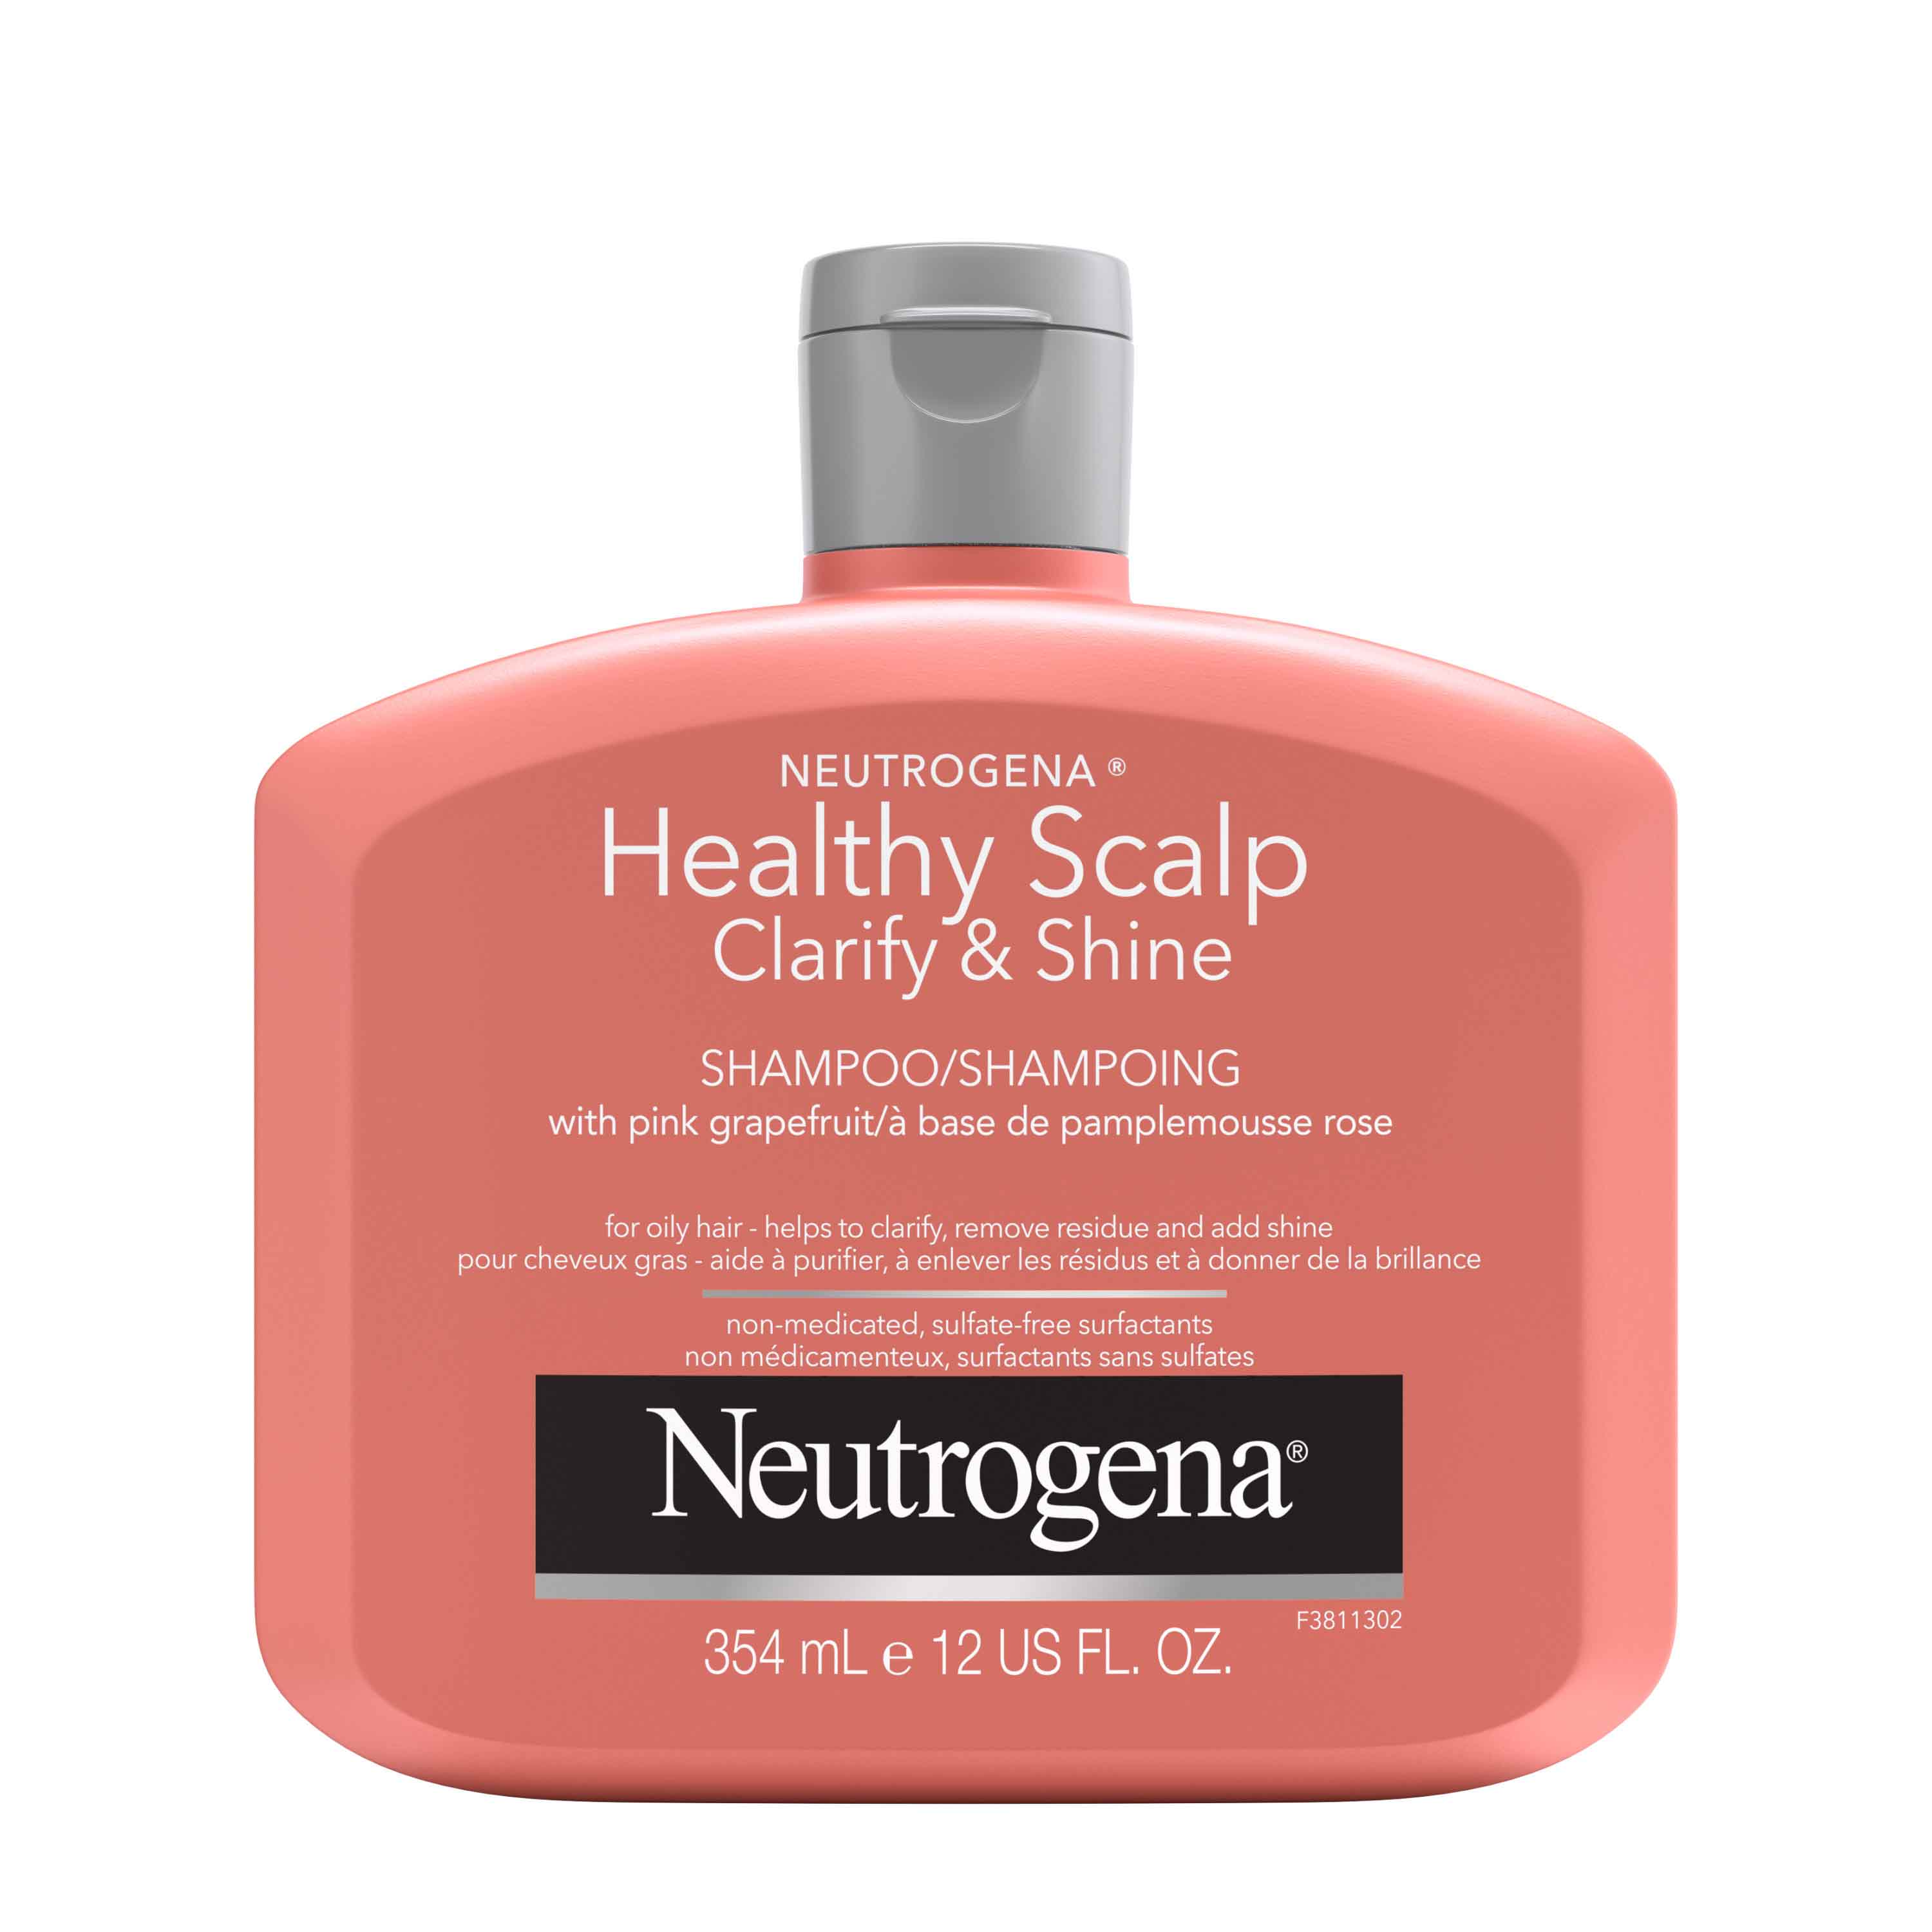 Shampoing NEUTROGENA® Healthy Scalp Clarify & Shine au pamplemousse rose